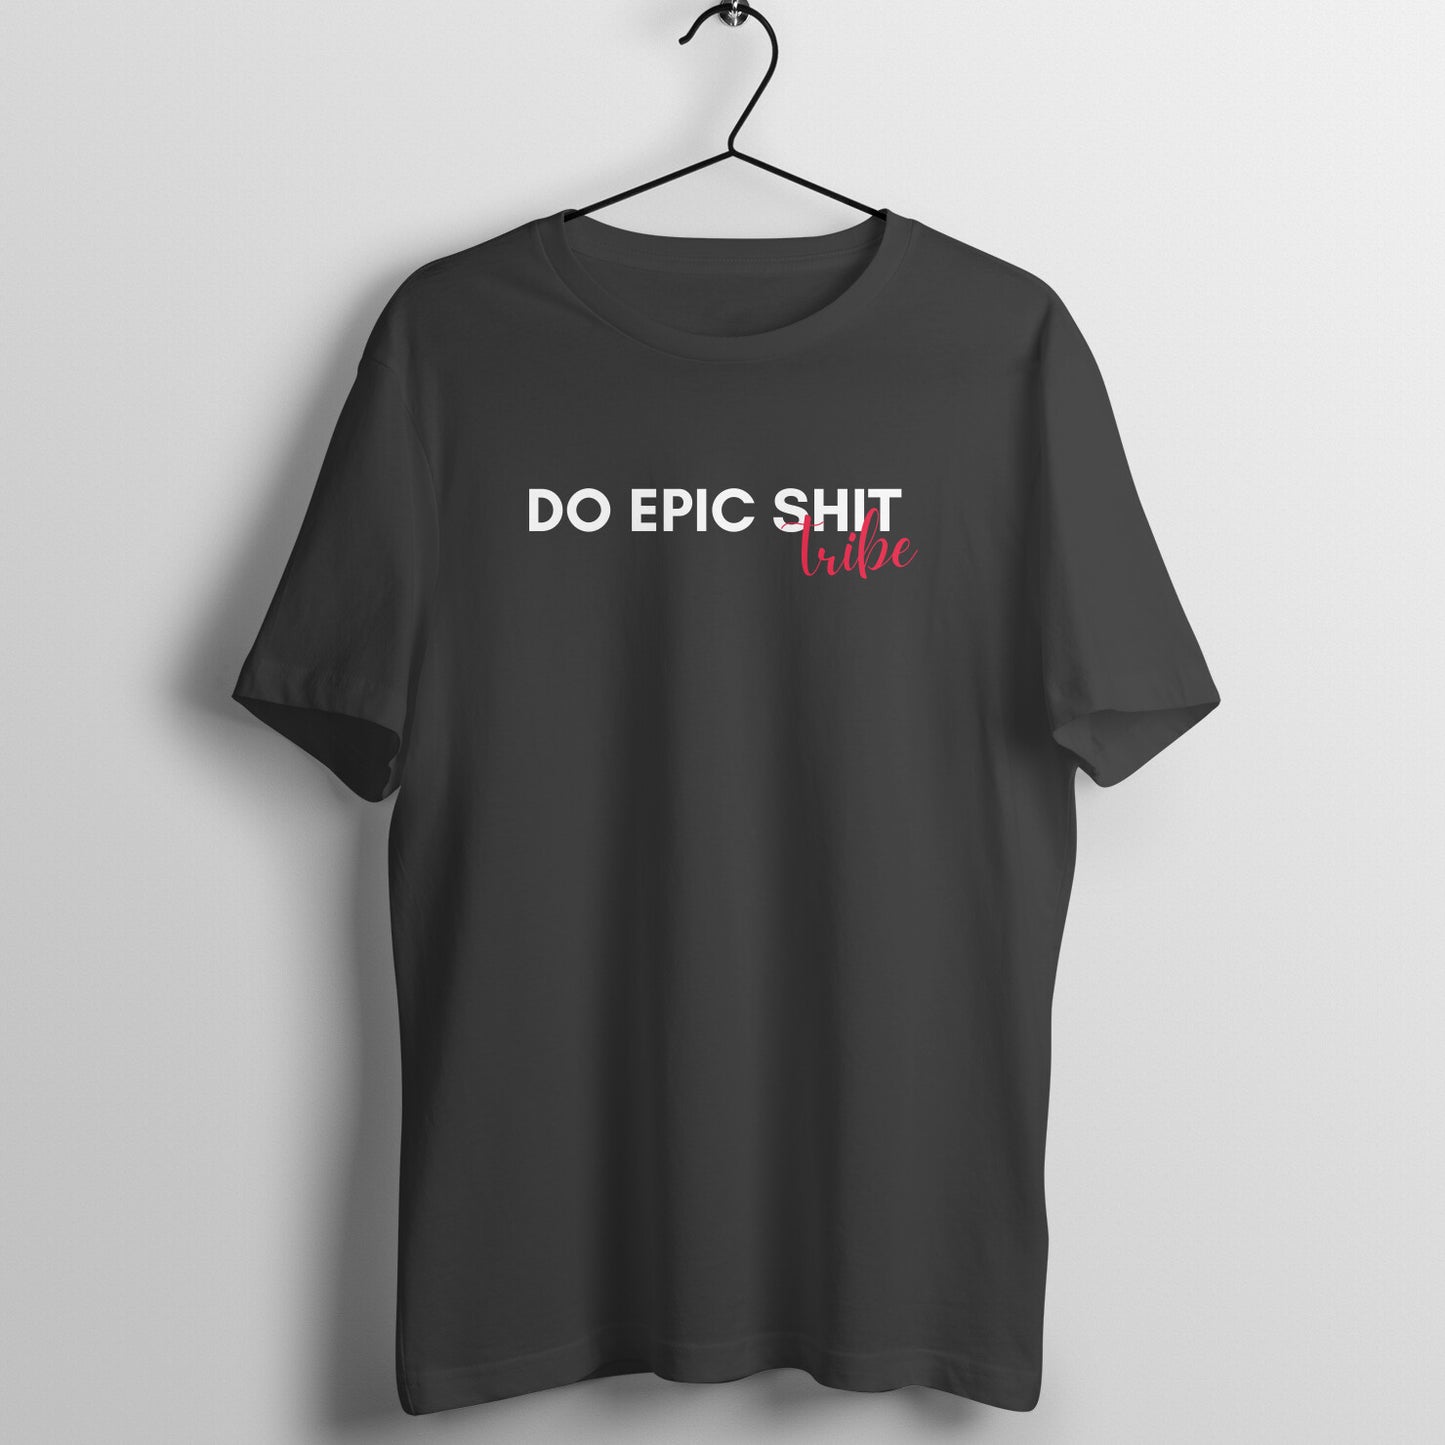 Do Epic Shit Tribe Tshirt